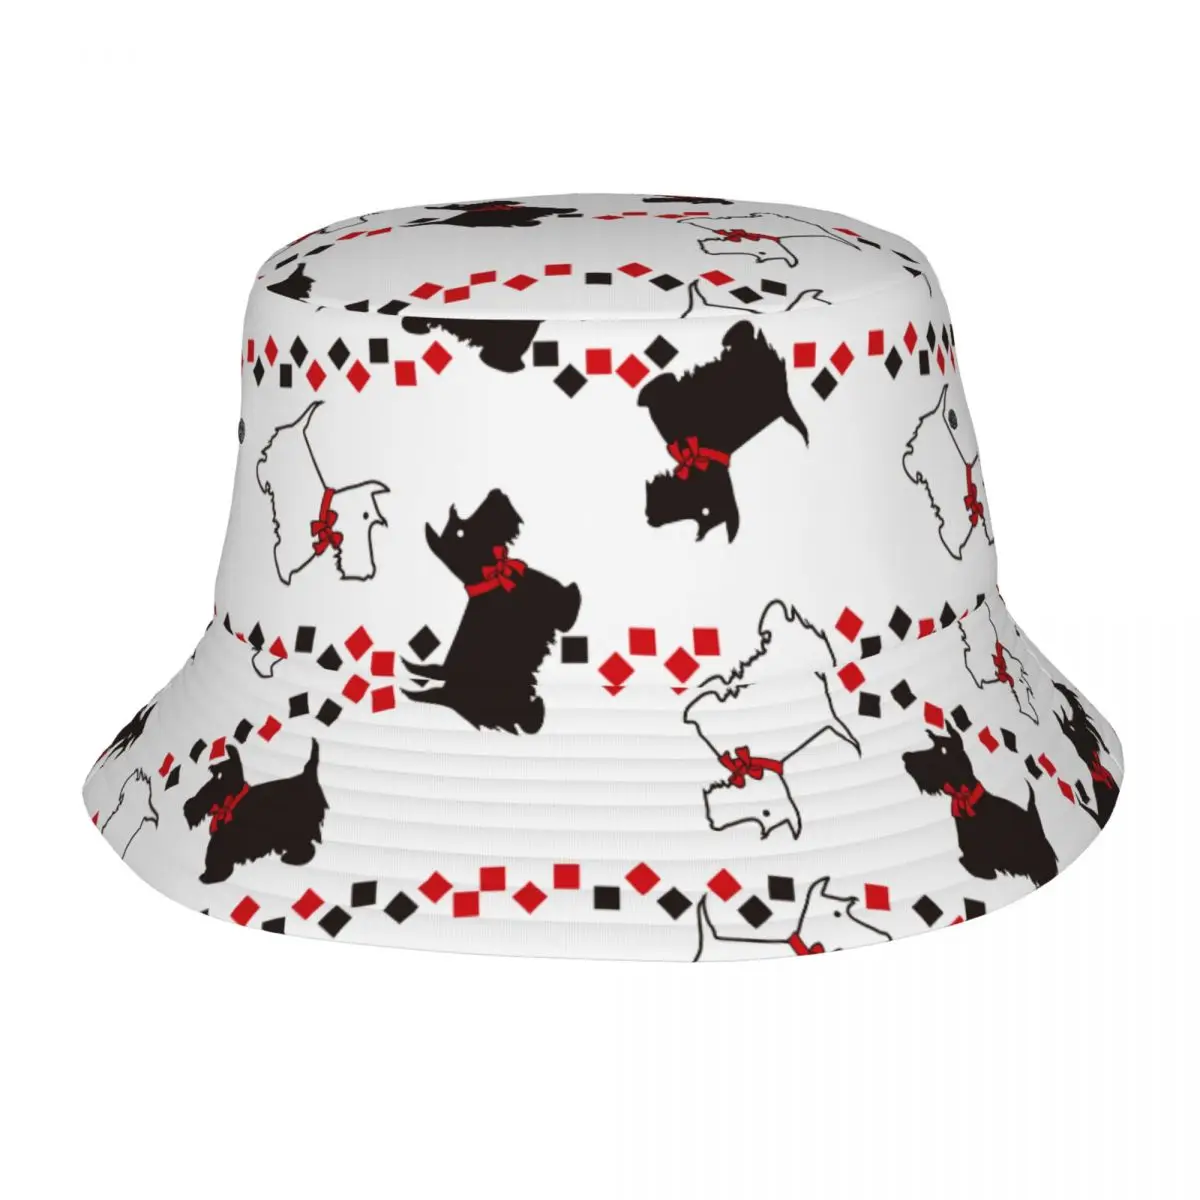 

Scottie Dogs Bucket Hats Getaway Headwear Accessories Animal Dog Lover Fisherman Caps for Outdoor Teen Boonie Hat Packable